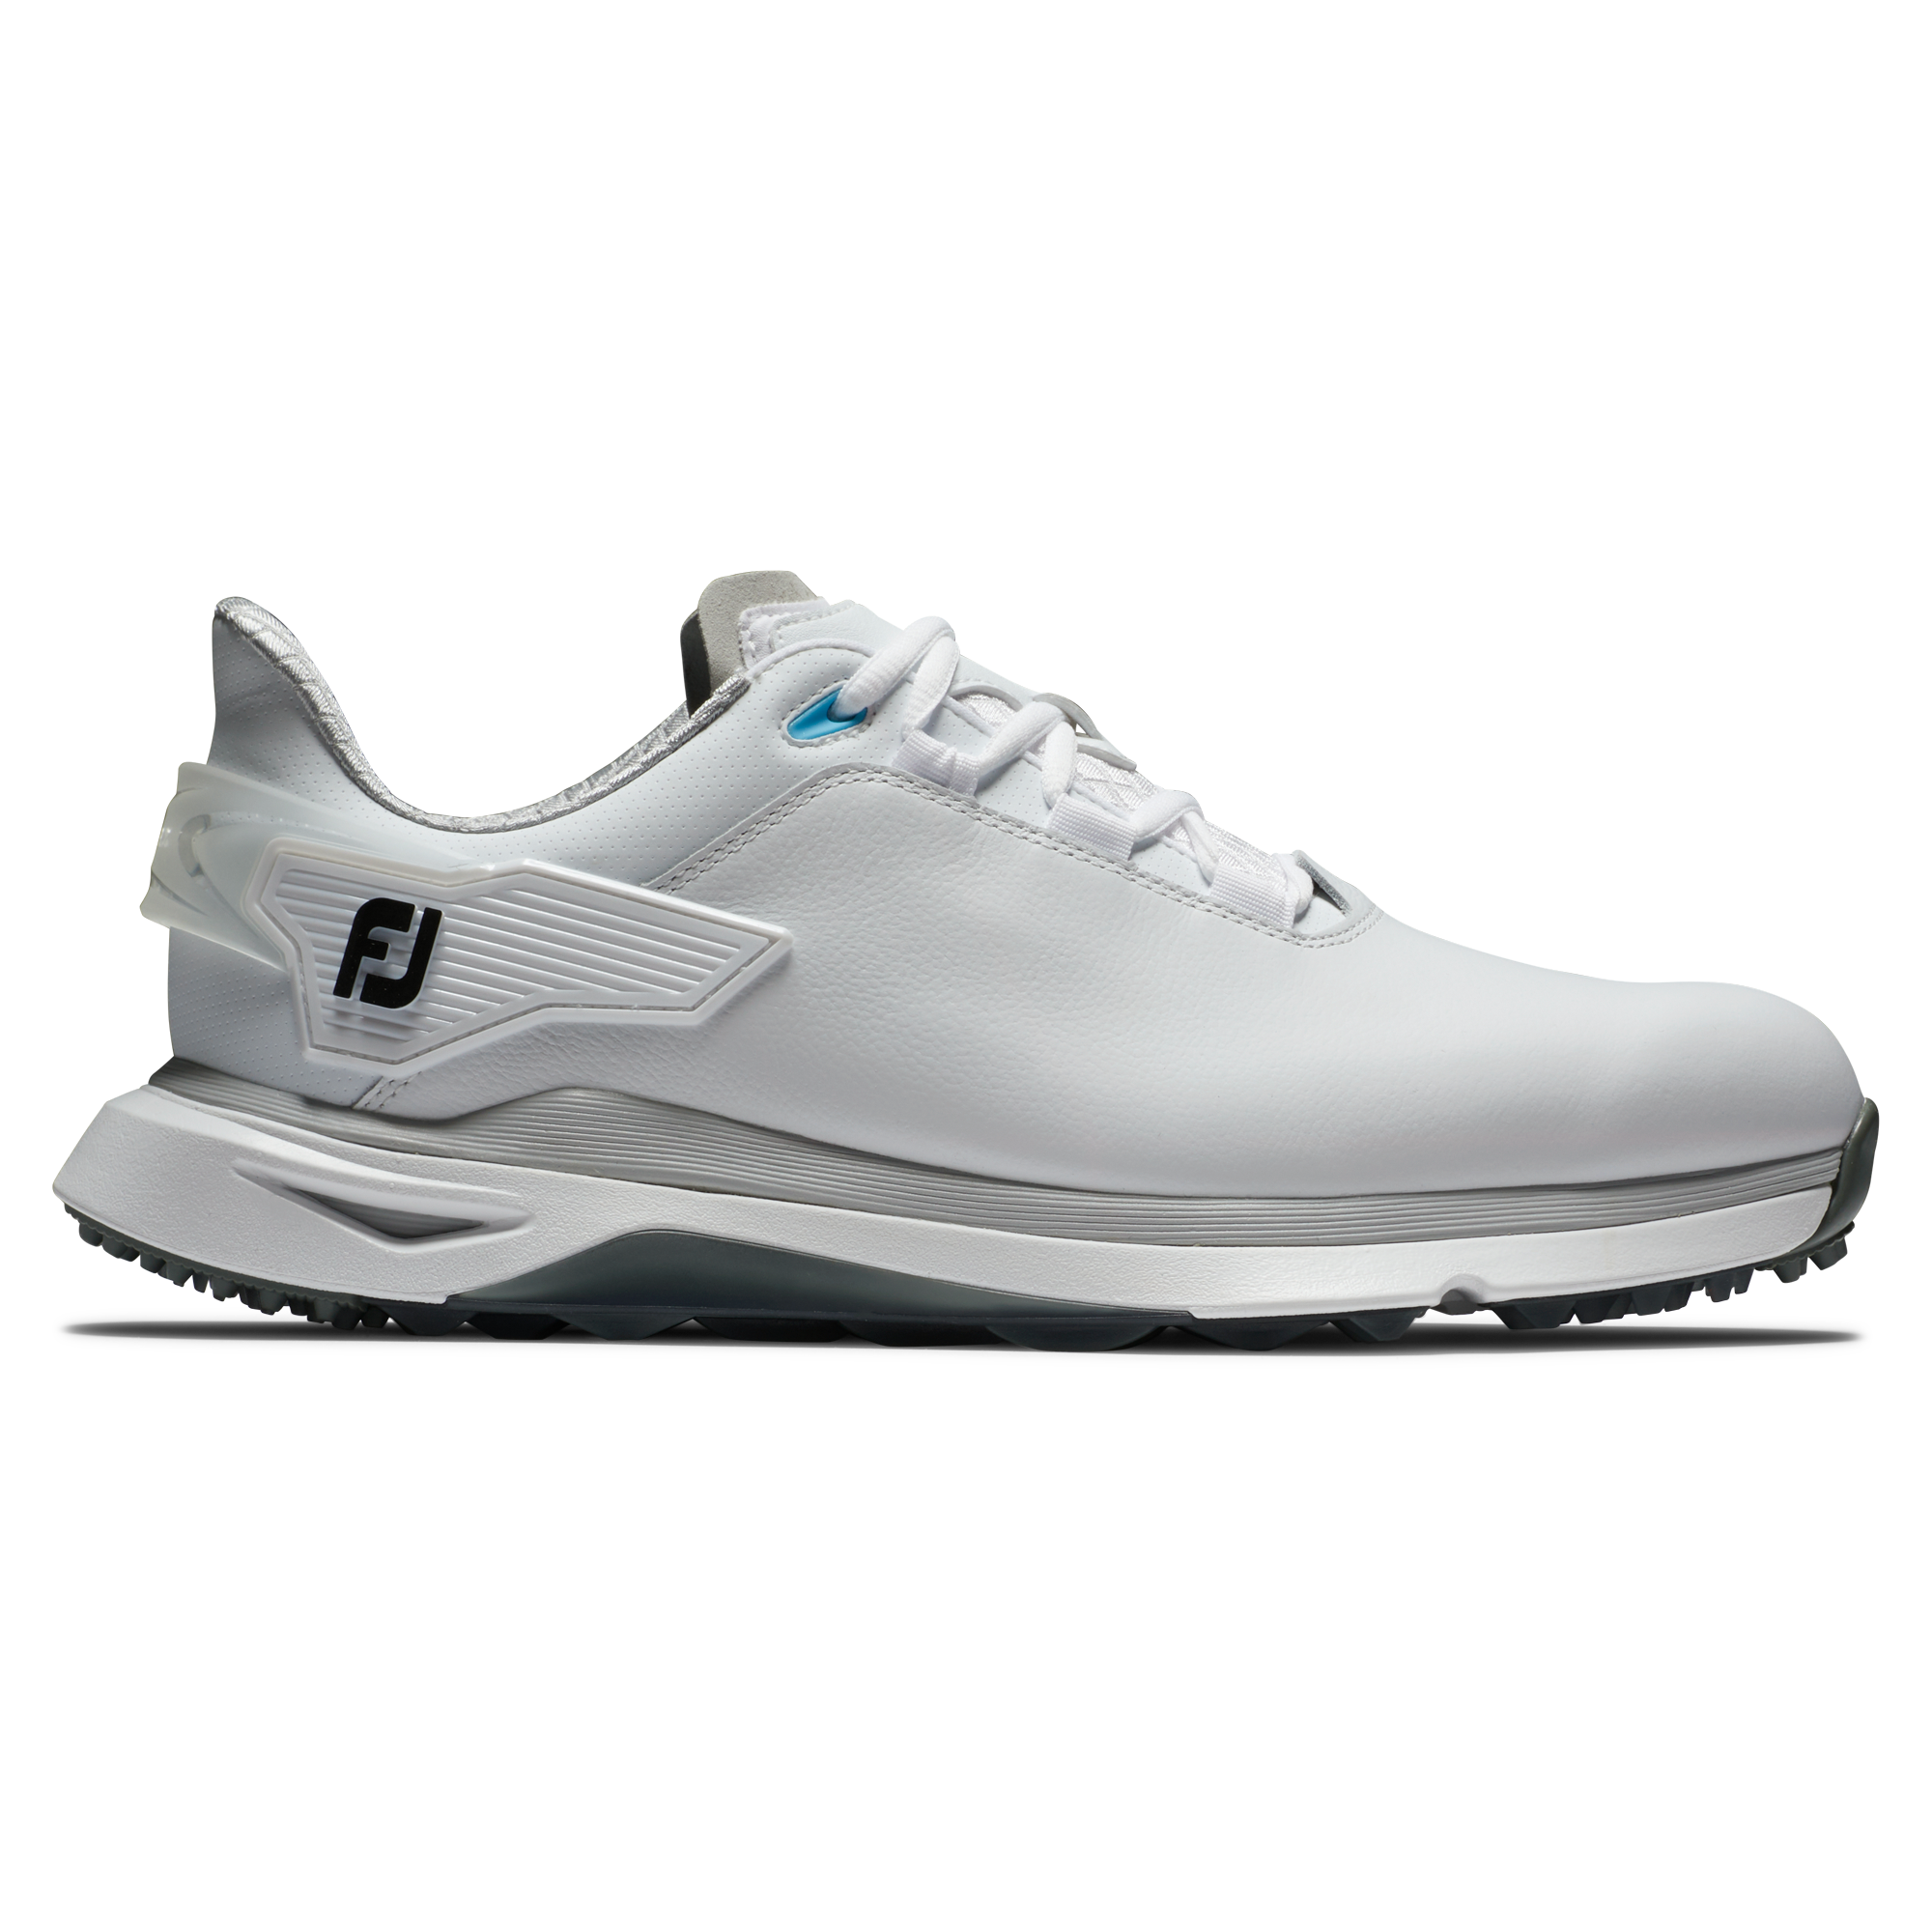 FootJoy Pro/SLX Wide pánské golfové boty, bílé/šedé, vel. 10 UK